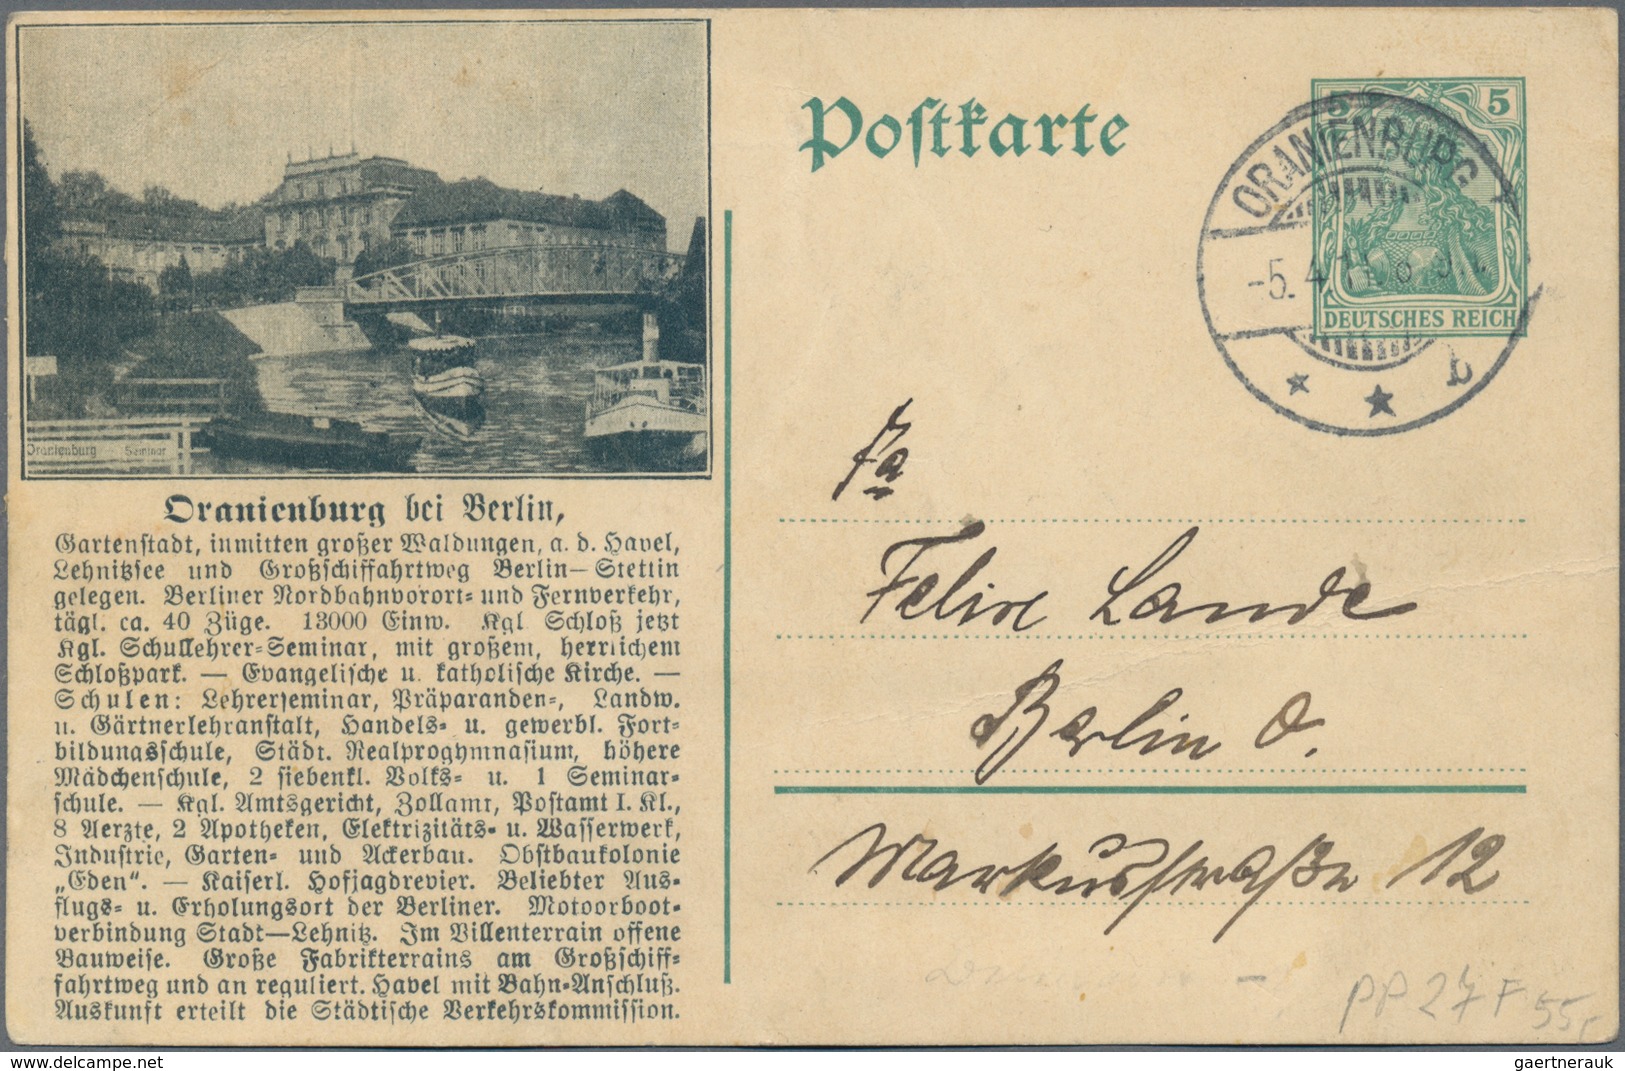 Deutschland: 1875 - 1938 (ca.), Posten von 60 zumeist deutschen Belegen im Album, dabei Memel, Obers